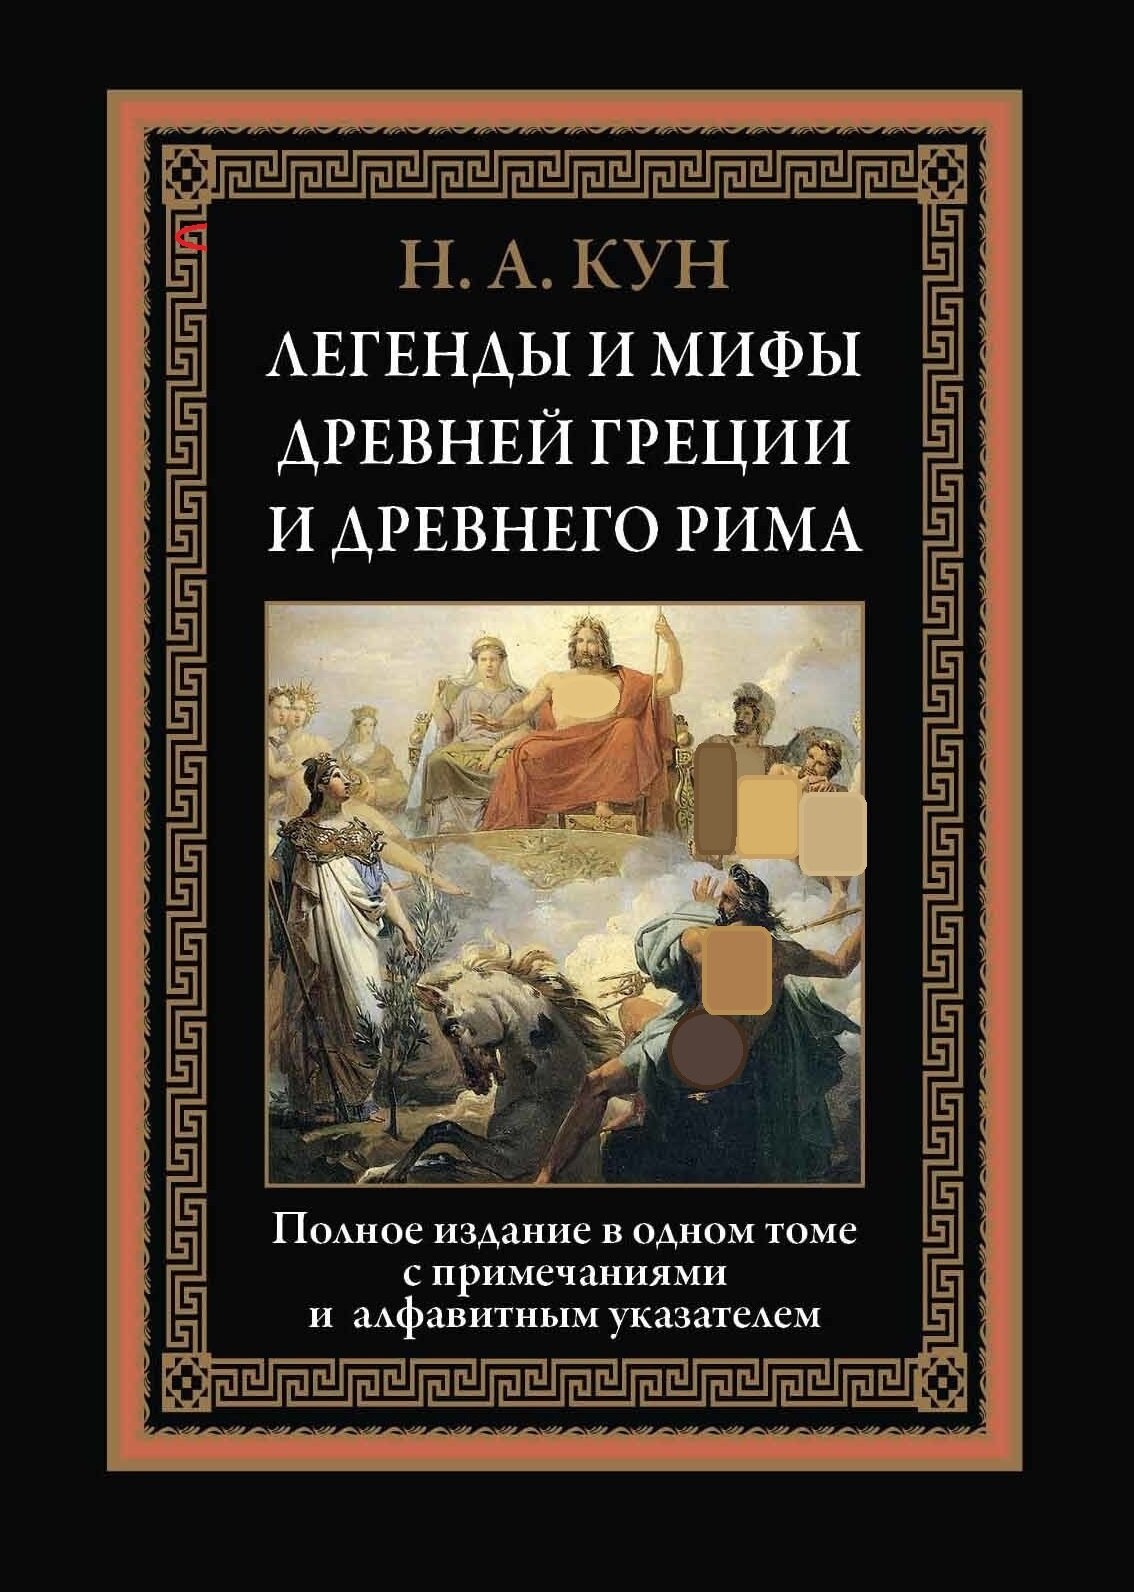 Кун Николай Альбертович - Легенды и мифы Древней Греции и Рима